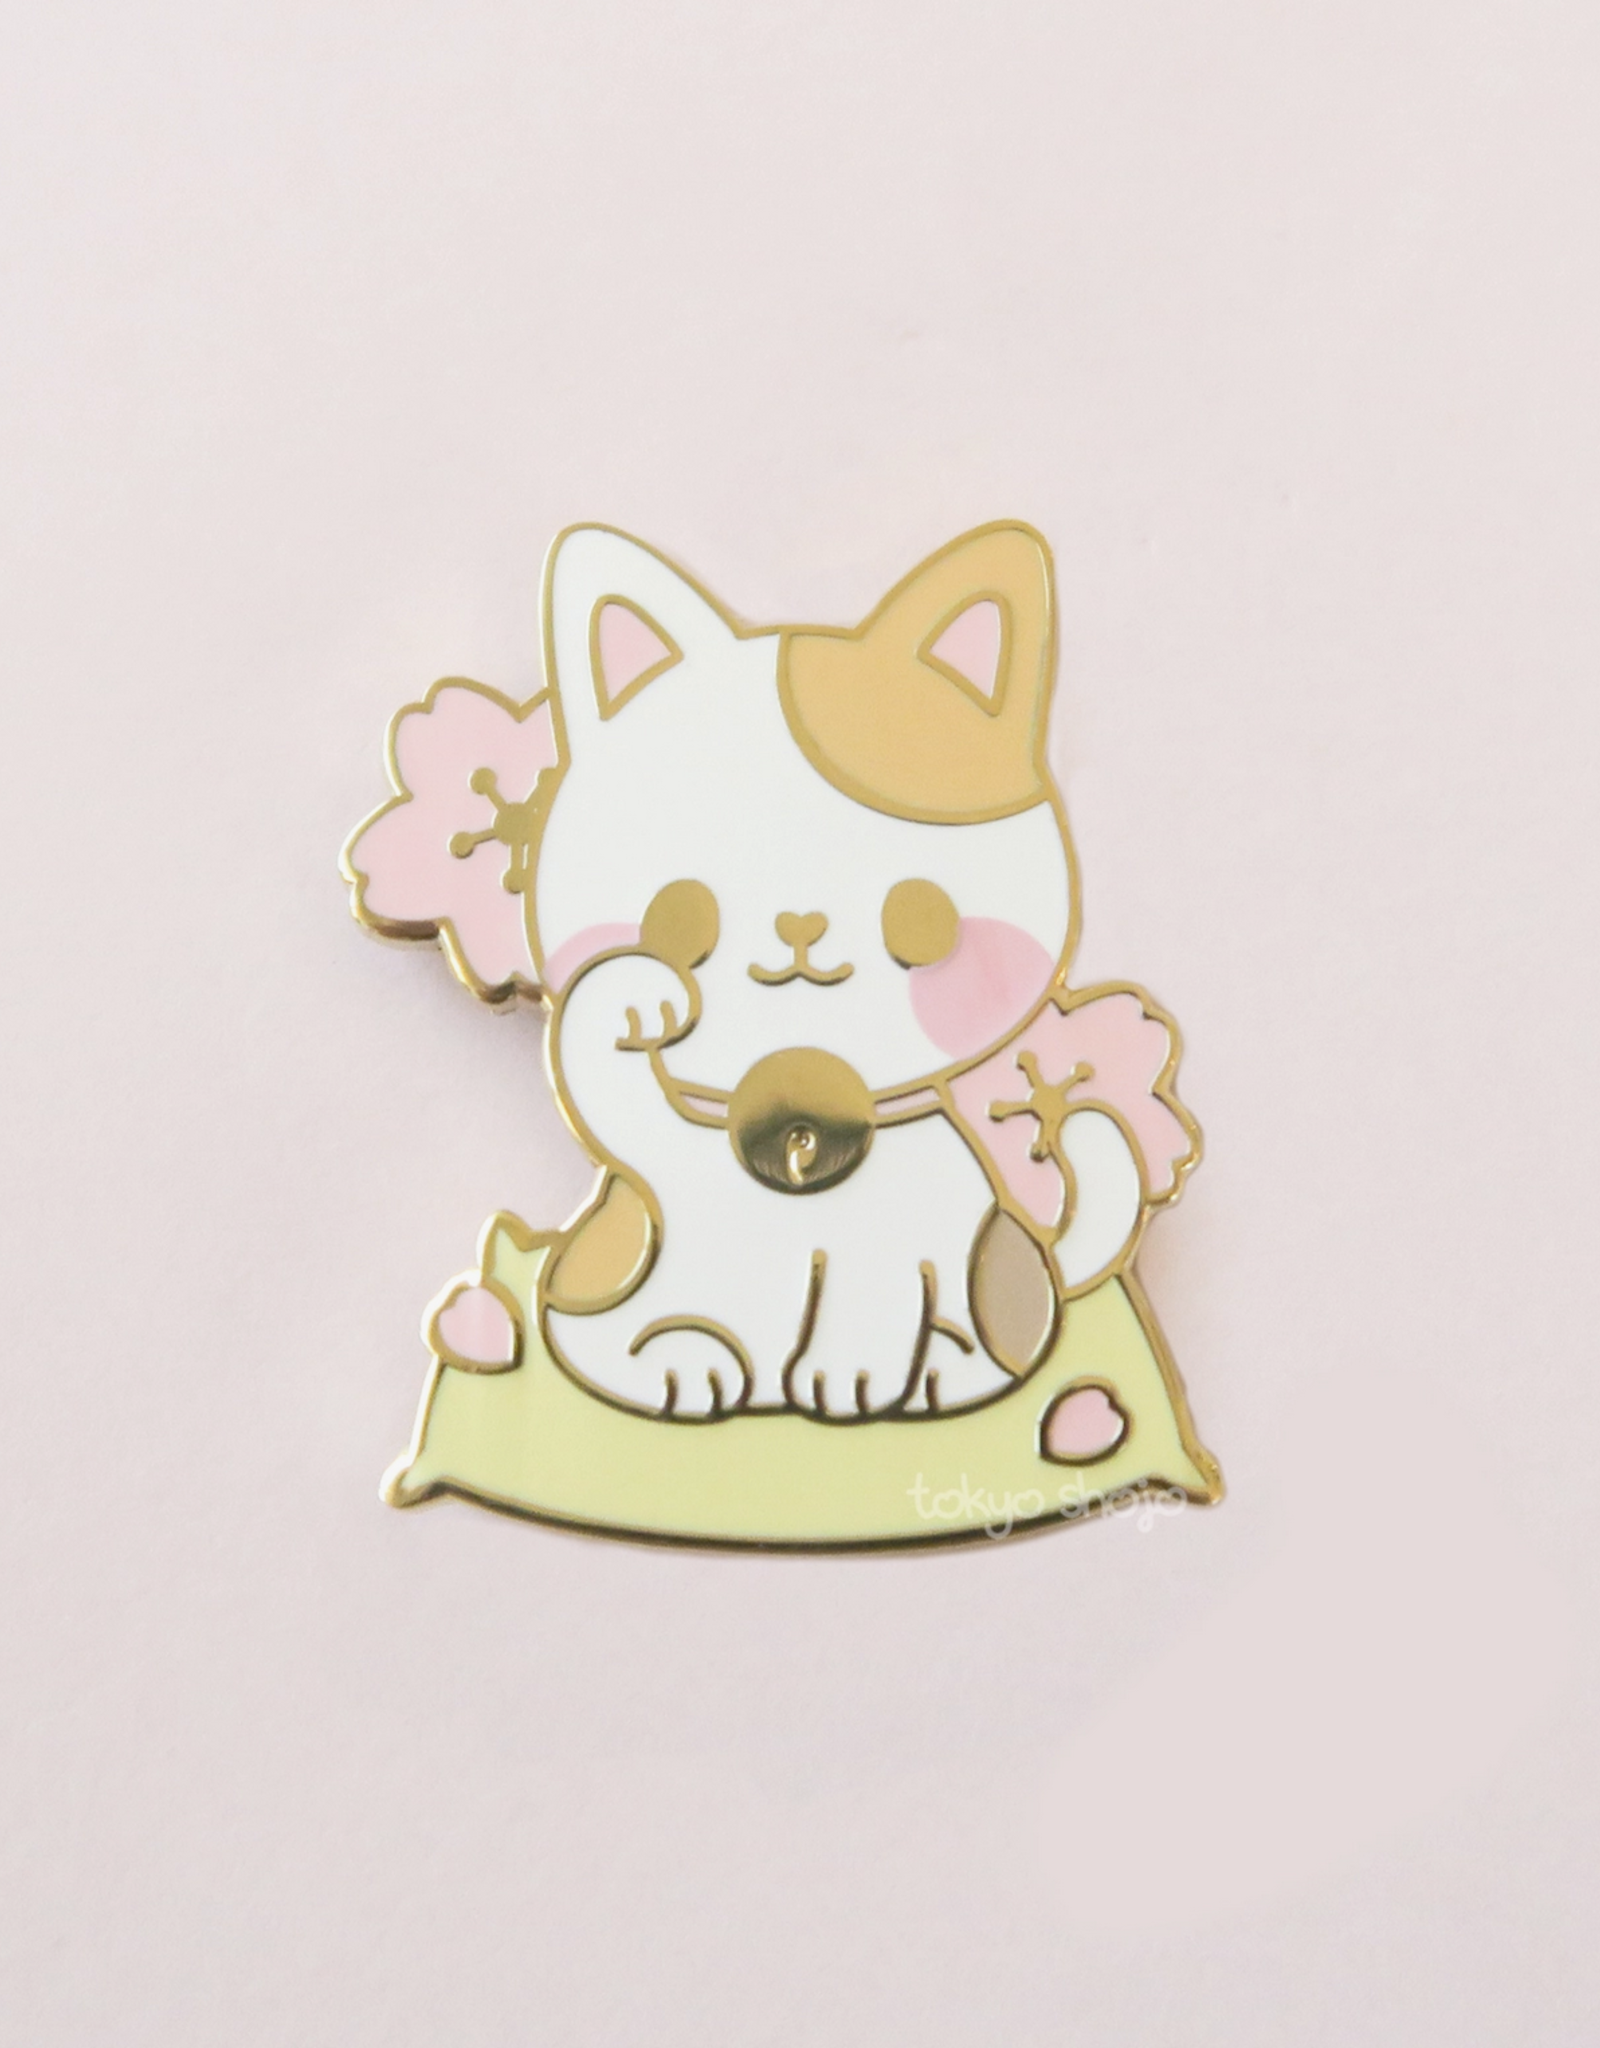 Maneki Neko Cat Pin